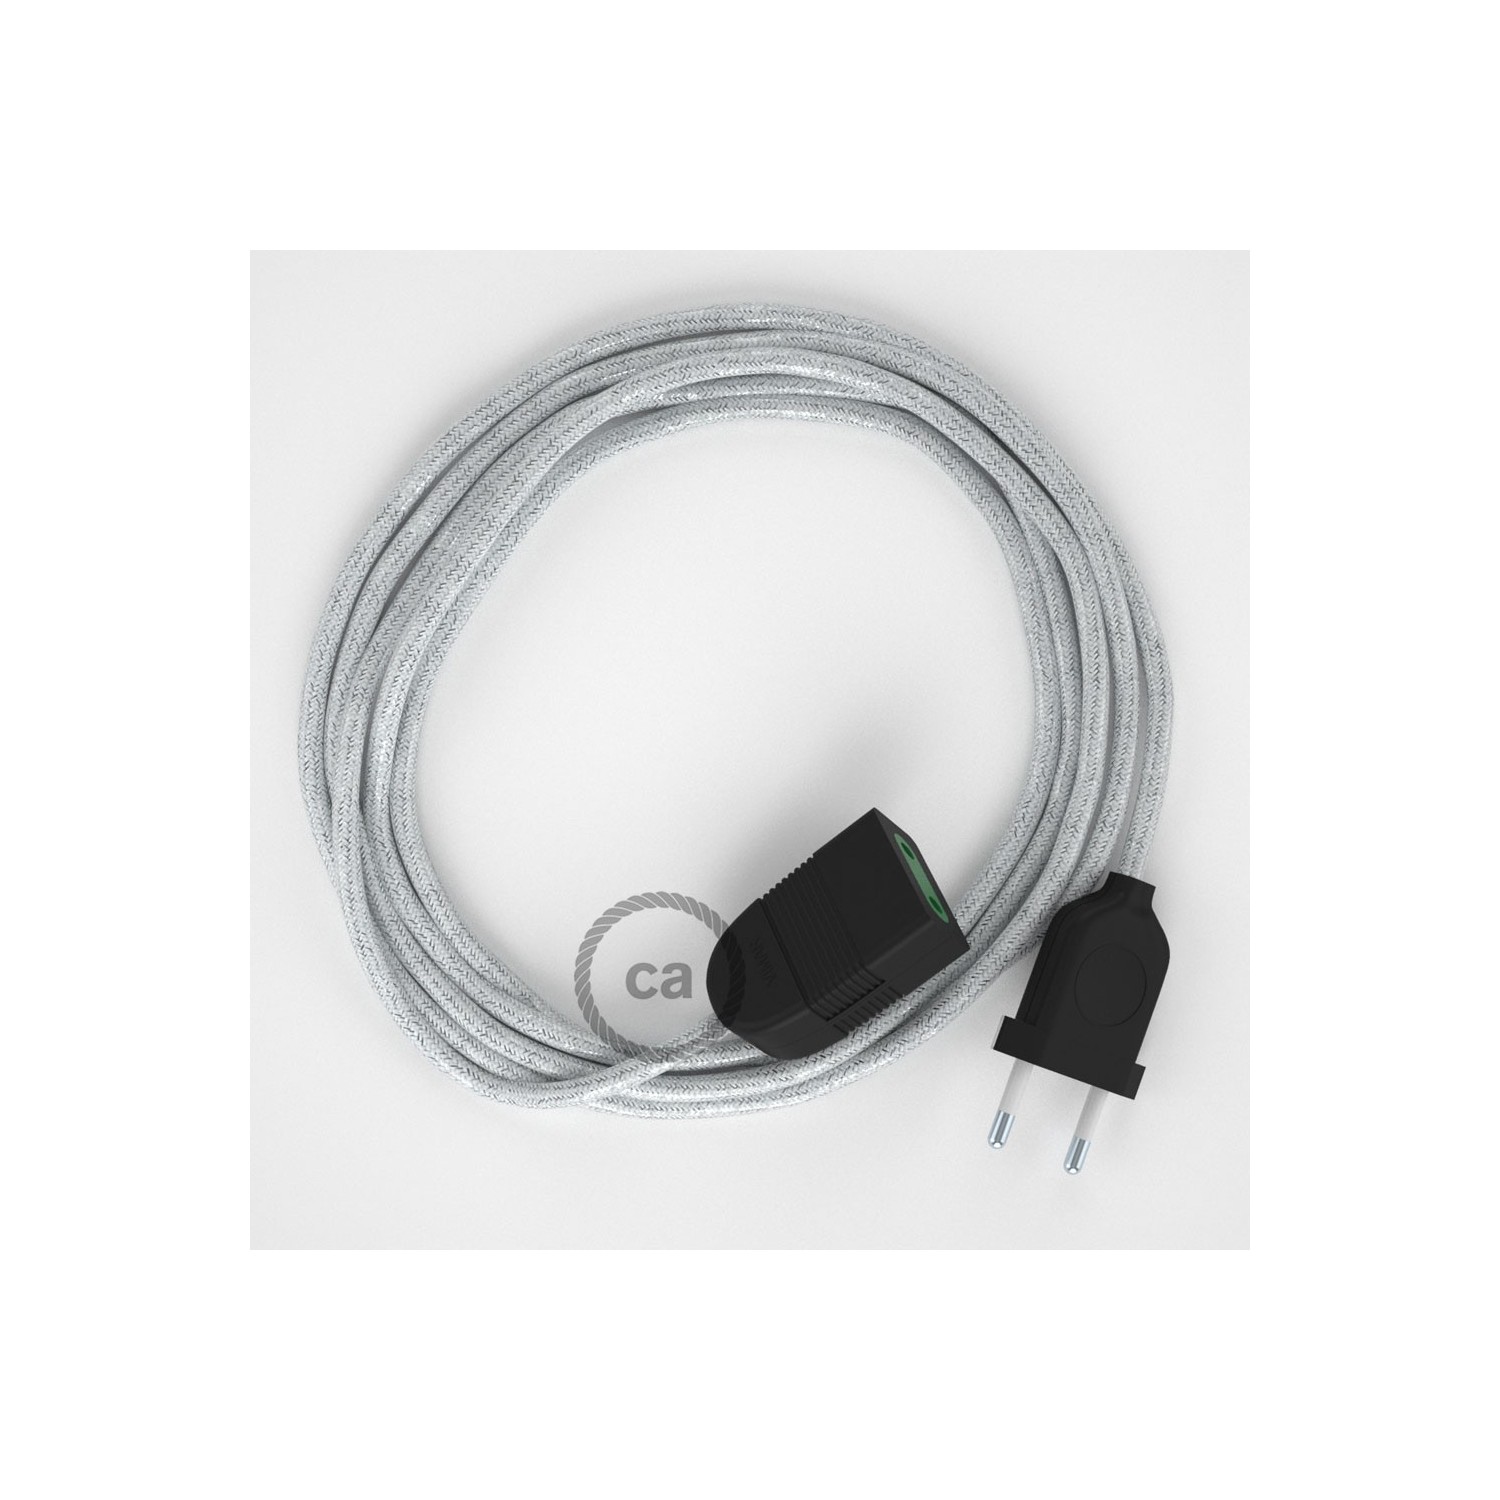 Podaljševalni kabel za napajanje (2P 10A) lesketajoč bel rejon RL01 - Made in Italy